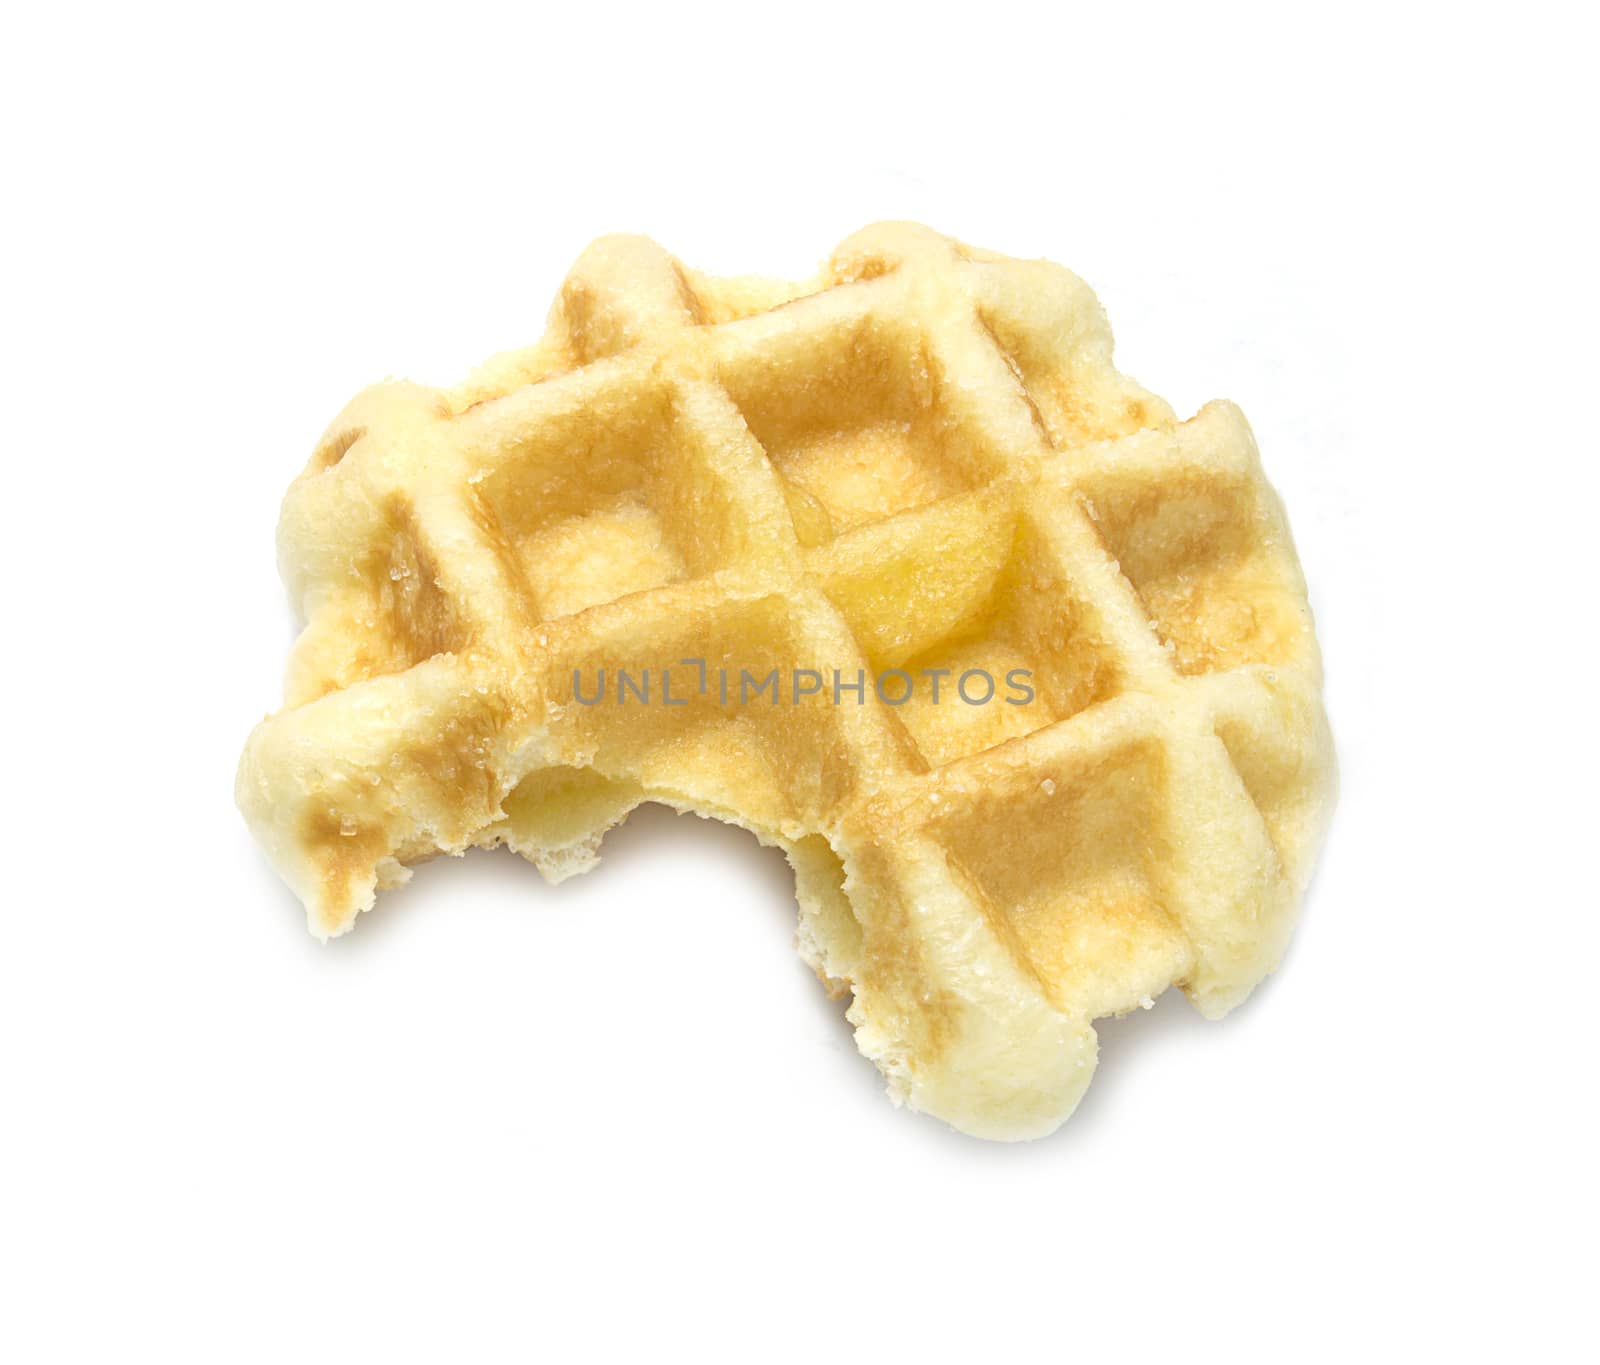 Sweet waffle on white background